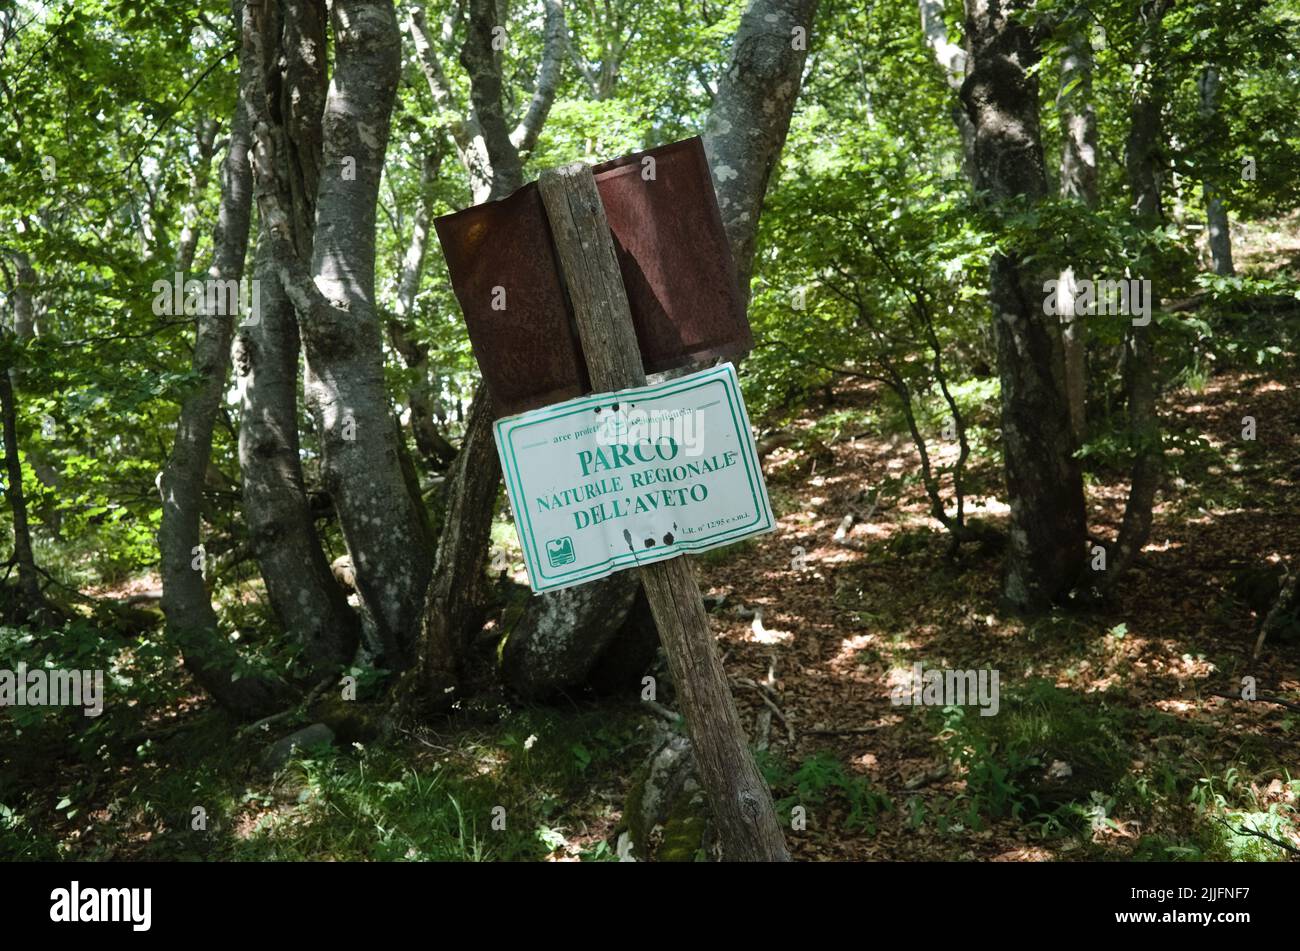 Alte gebogene Metallplatte auf Holzmast im Wald mit Inschrift Parco Naturale Regionale dell'Aveto bedeutet Aveto Regional Natural Park aus dem italienischen Stockfoto